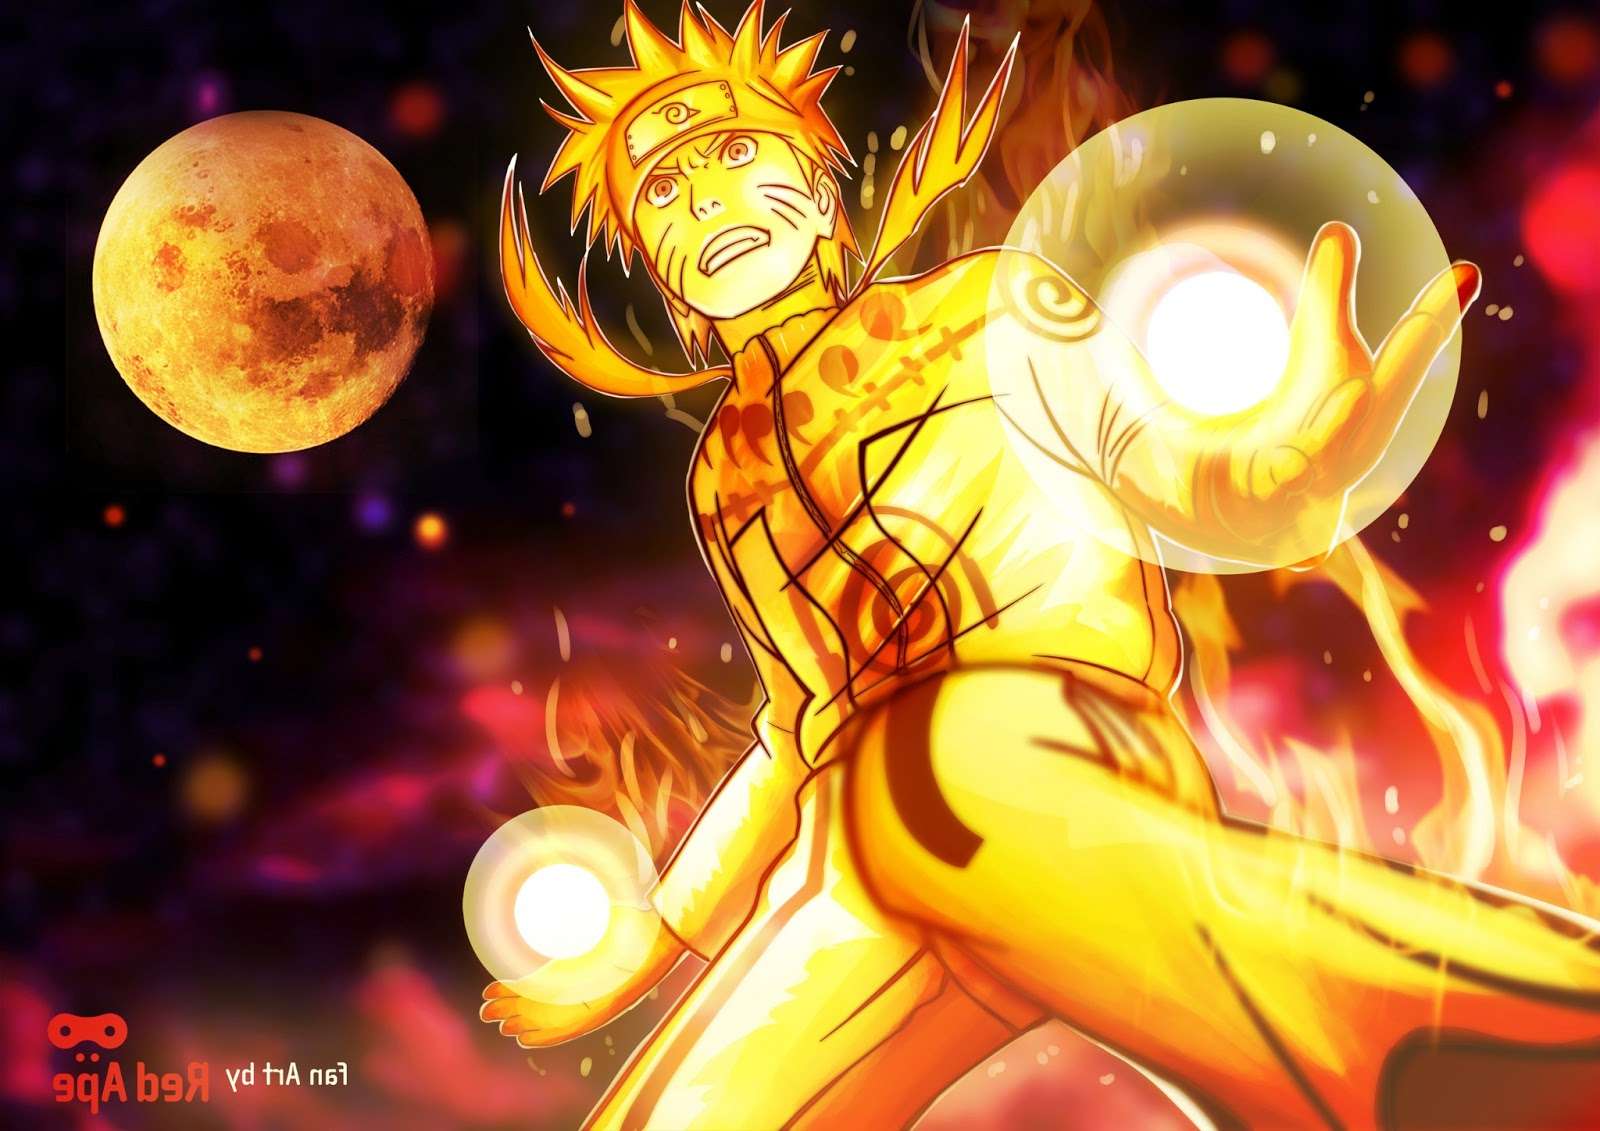 Cửu vĩ - một trong những kỹ năng đặc biệt của Naruto, cho phép cậu sử dụng sức mạnh của chín tailed beast khác nhau trong một lần đấu. Hãy ngắm nhìn những hình nền Naruto cửu vĩ đầy màu sắc và độc đáo, khi Naruto sử dụng sức mạnh của các chú quỷ vĩ để cùng đánh bại kẻ thù và giải cứu bạn bè.